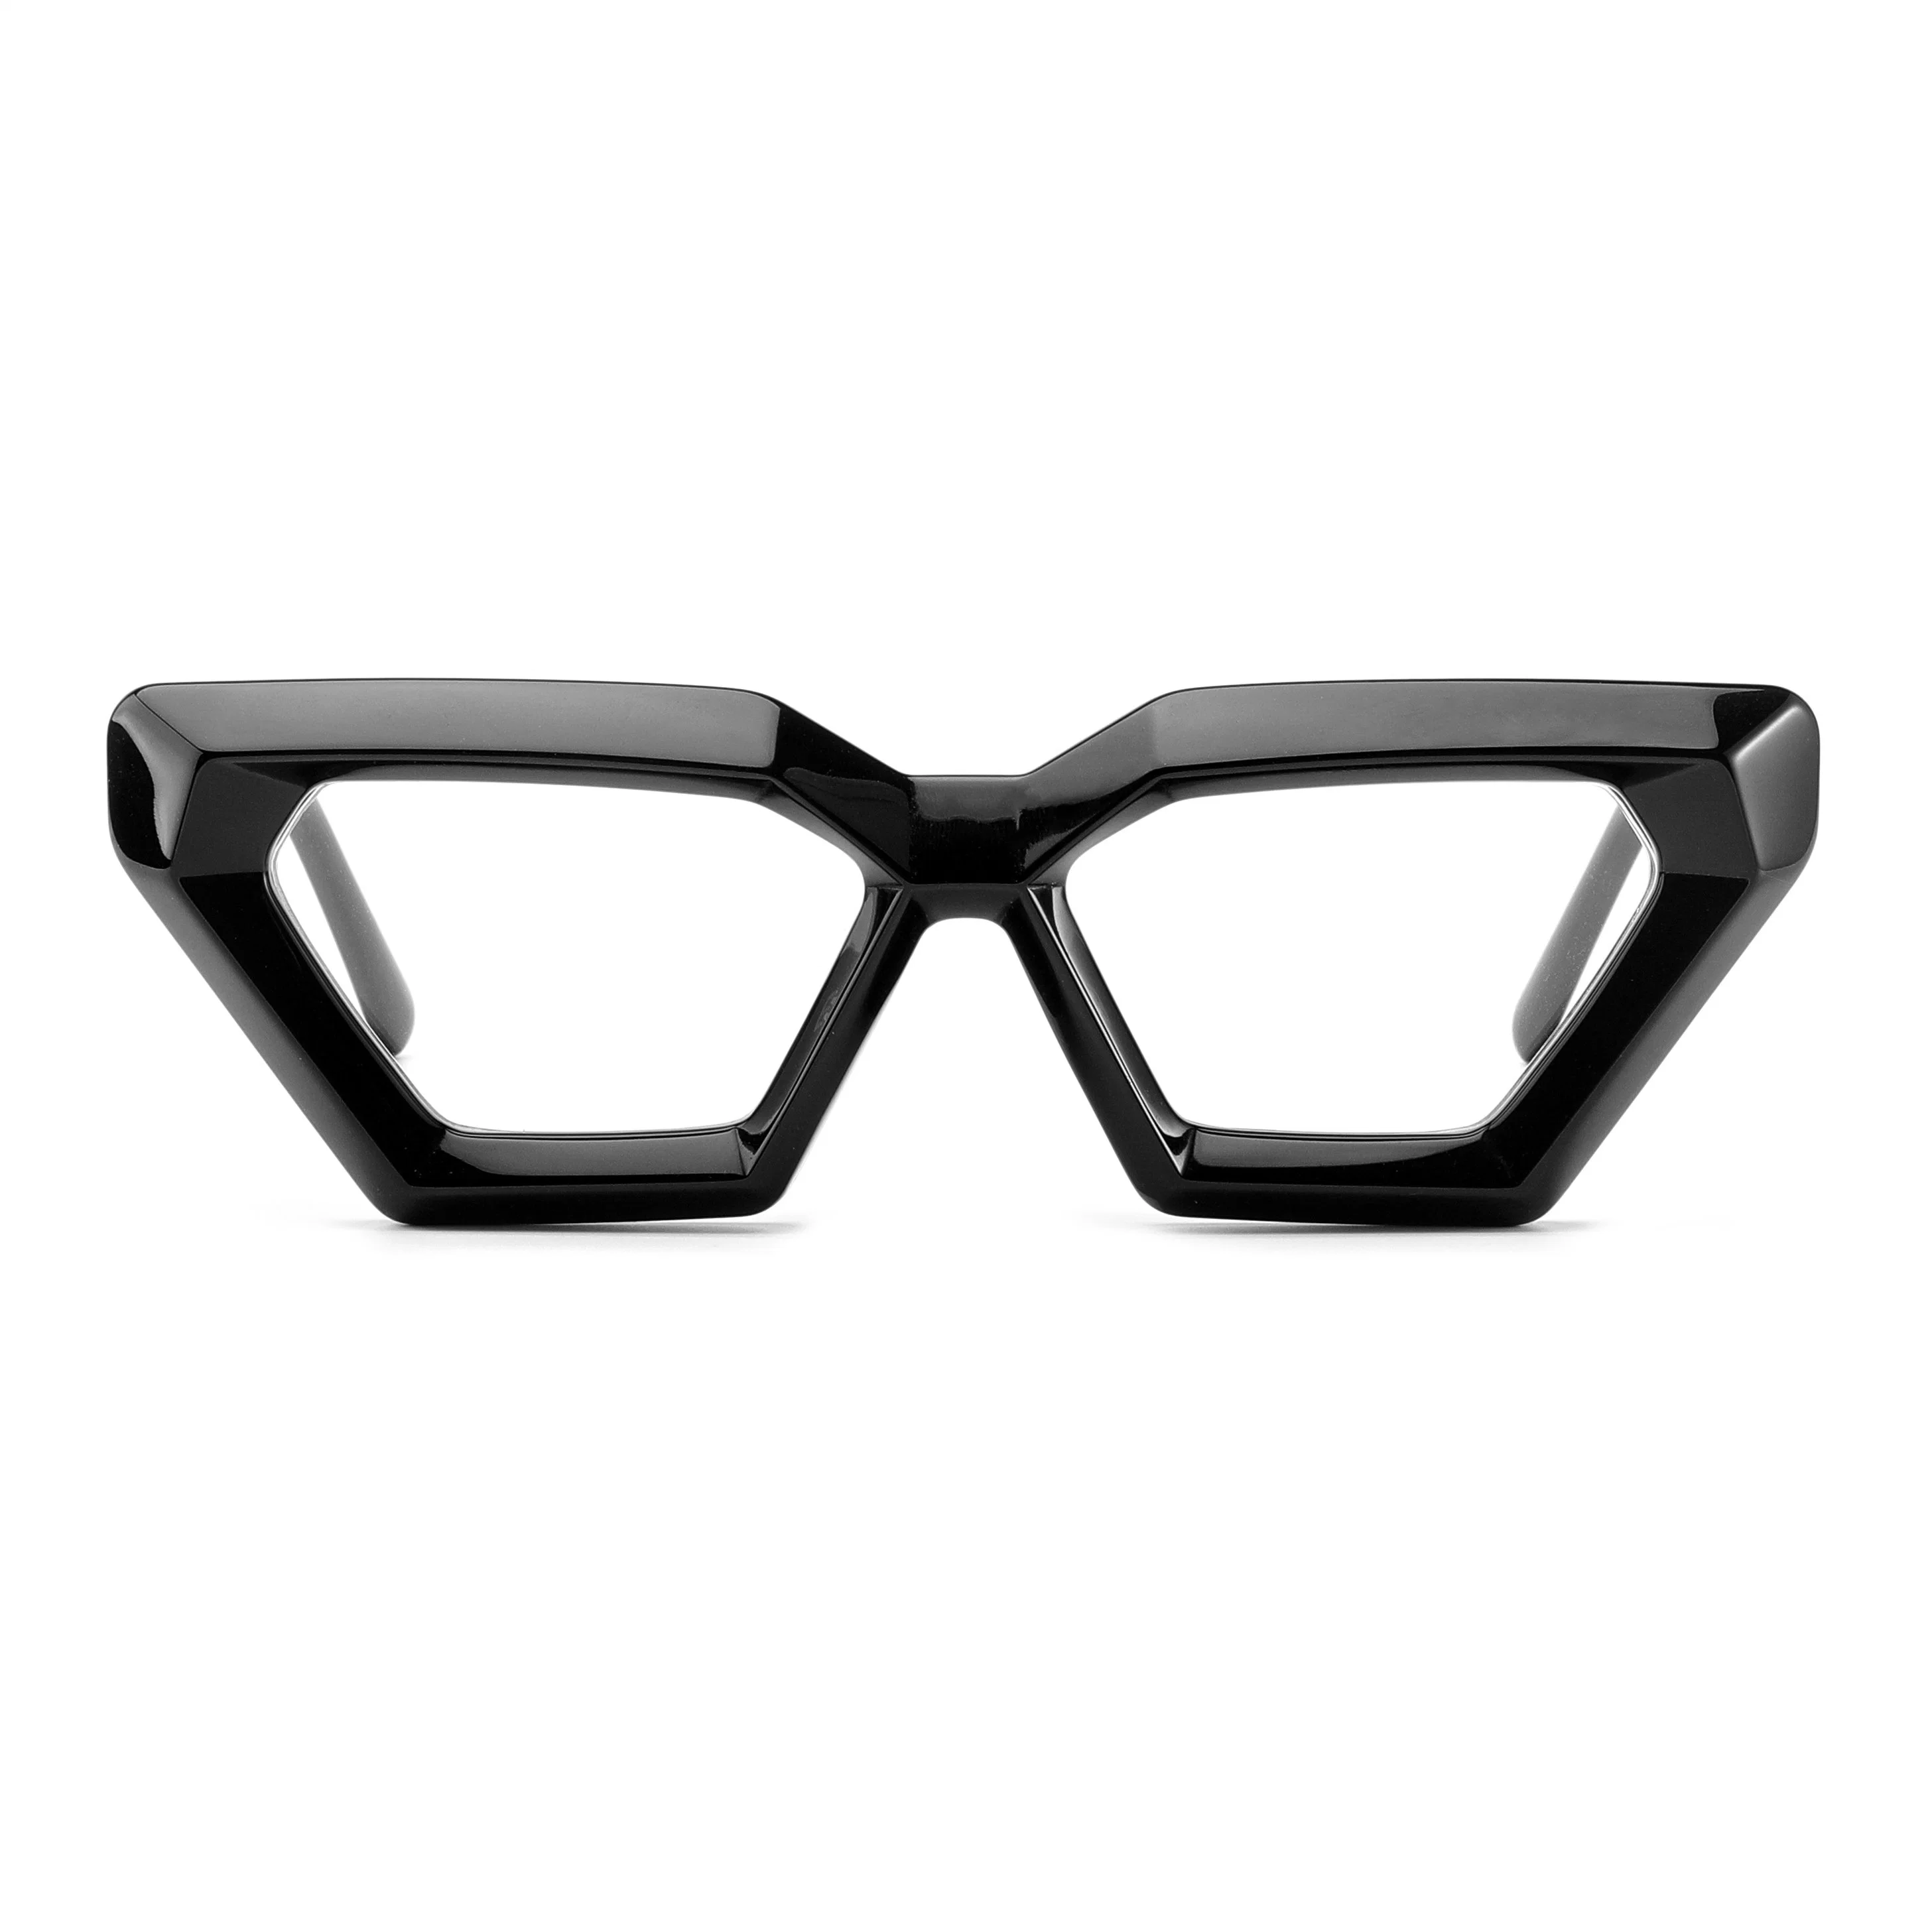 تصميم الأزياء ثريات كثيفة من الأكتيلات الثقيلة مع نظارات CE البصرية الإطارات